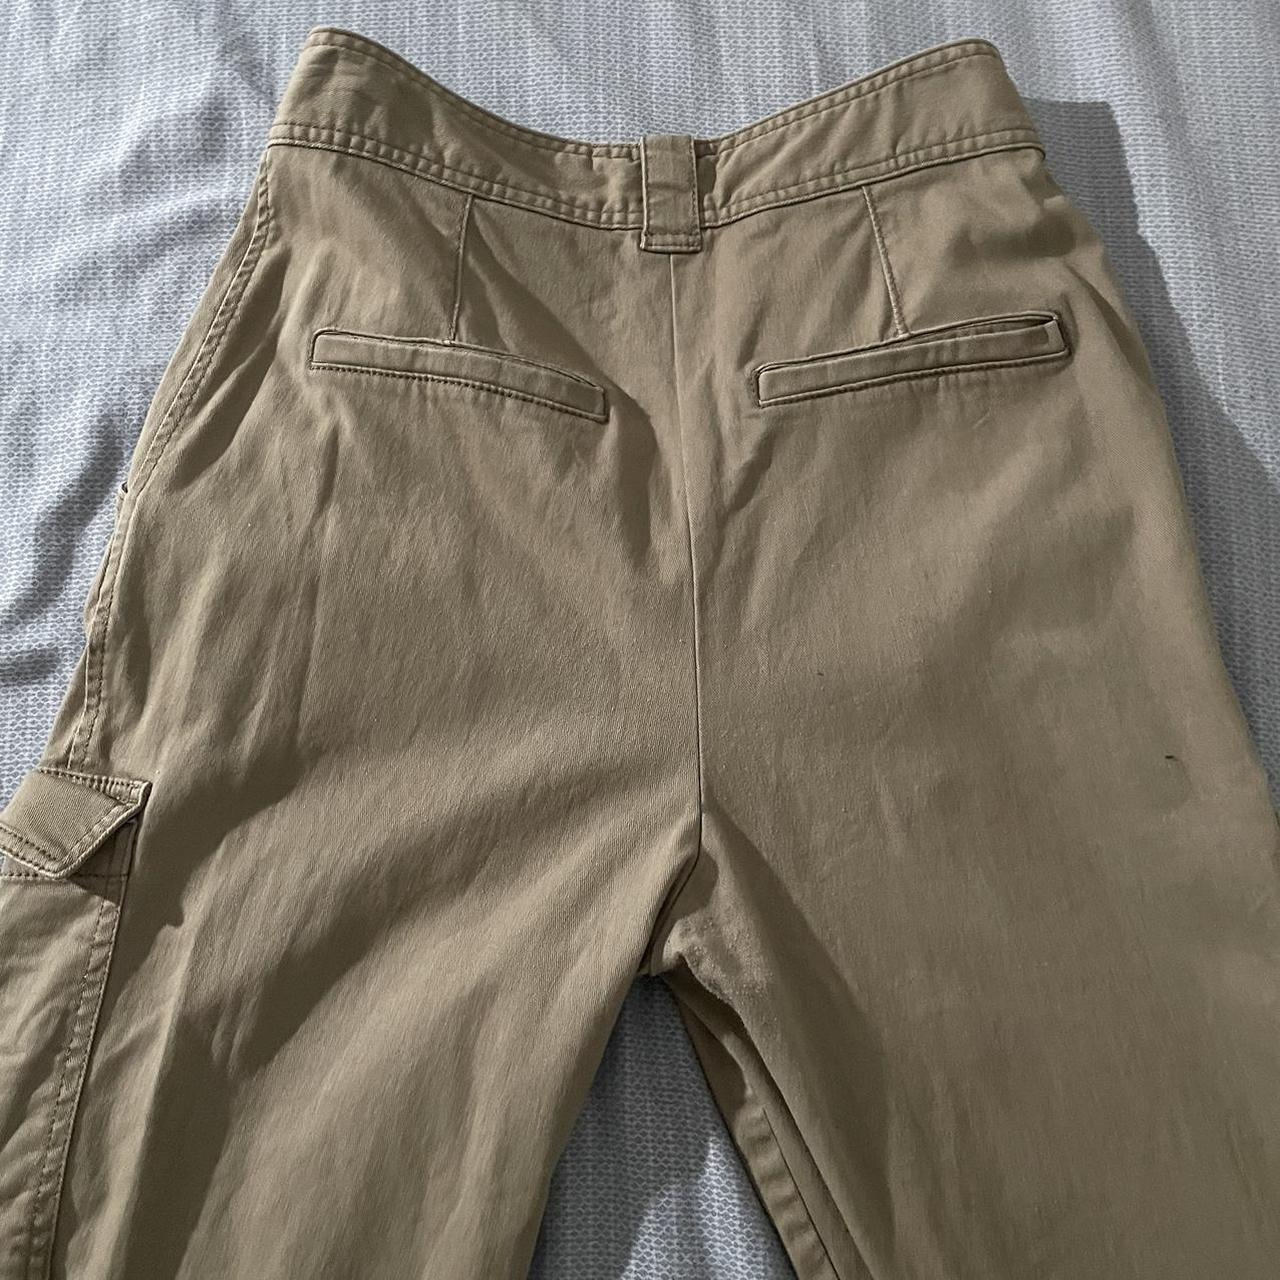 H&M cargo pants. #H&M #pants #cargopants #jeans #sale - Depop